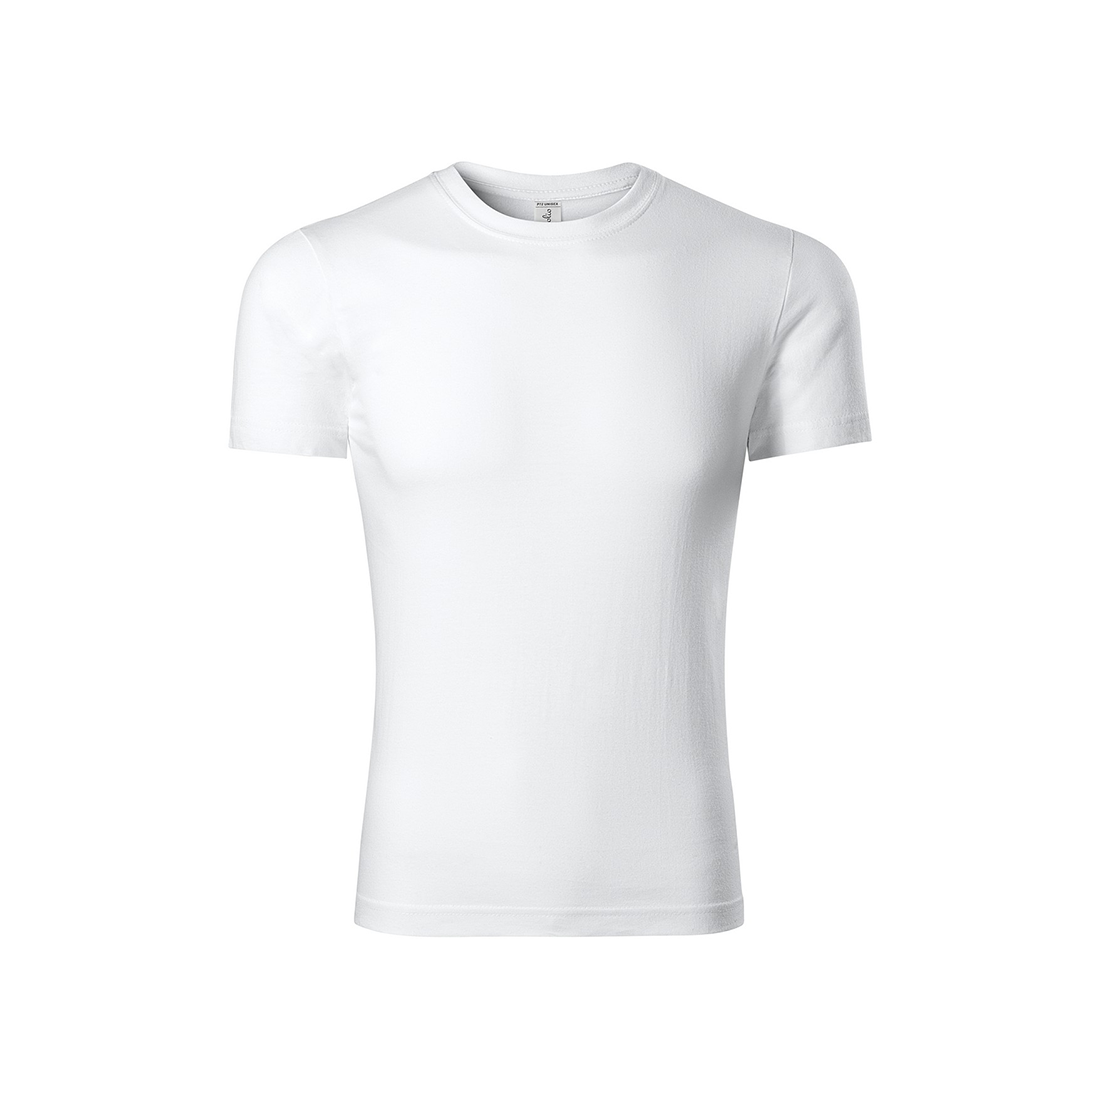 Kids Cotton T-shirt - Safetywear